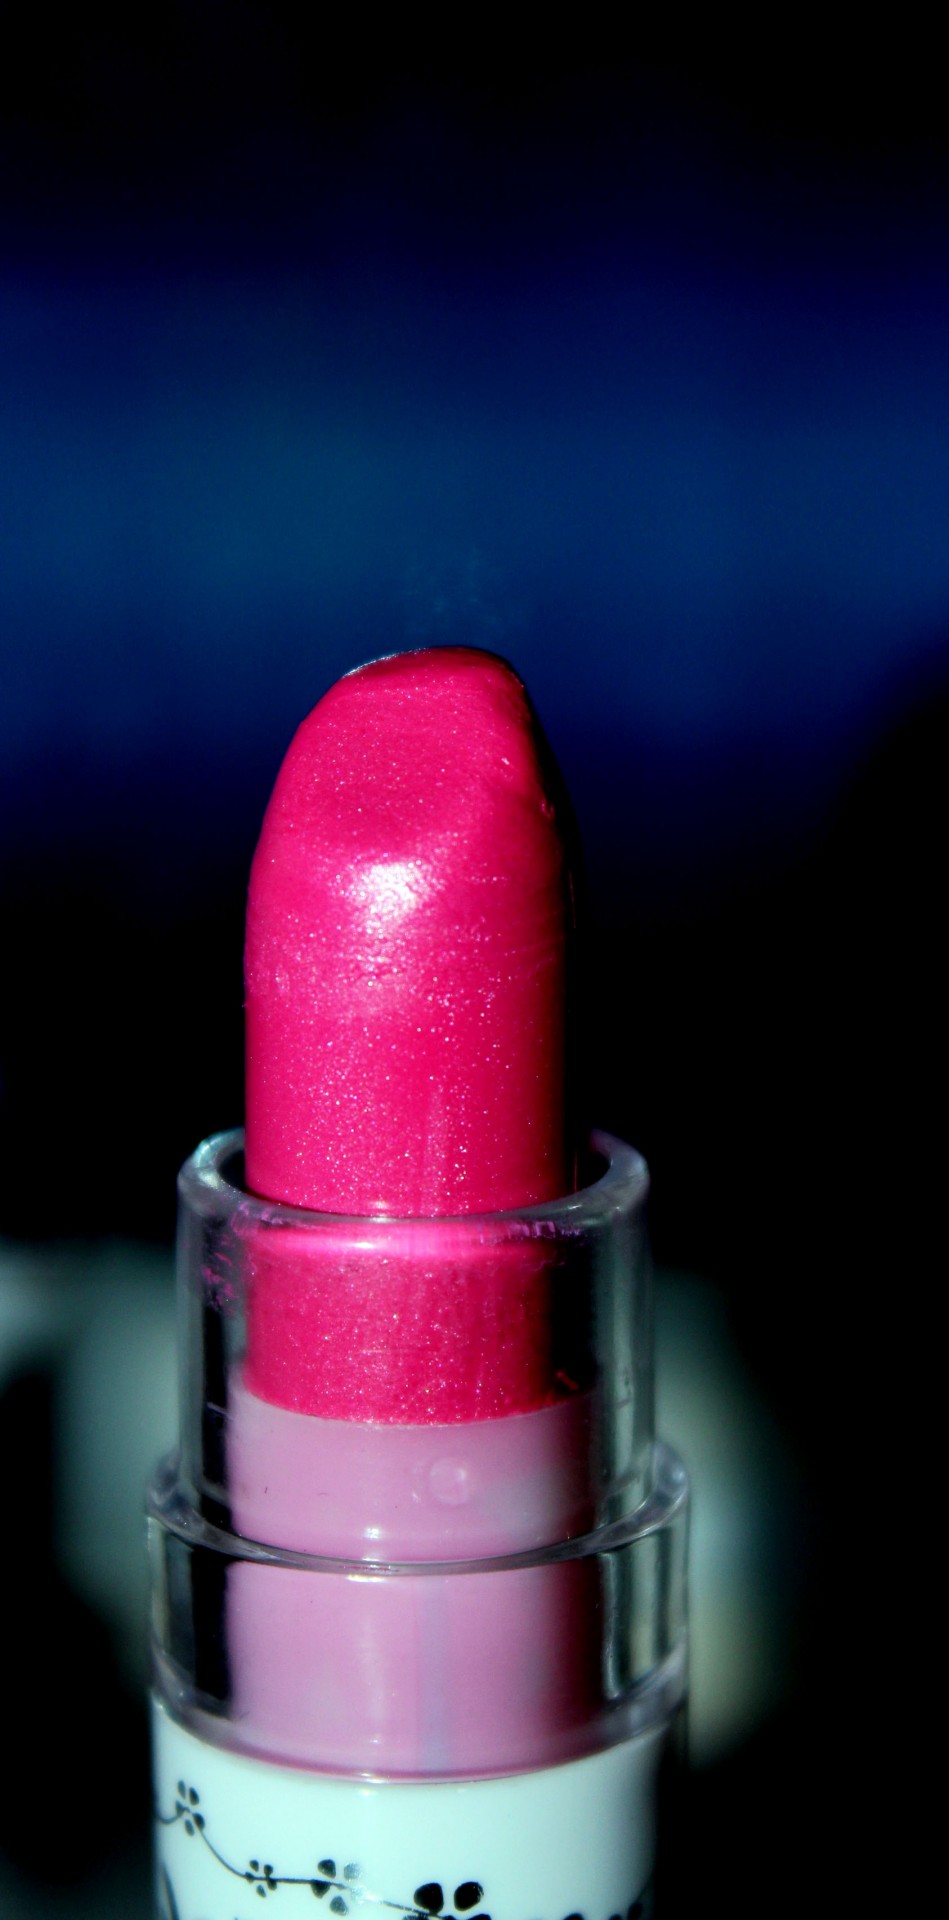 pink lipstick lipstick cosmetics free photo